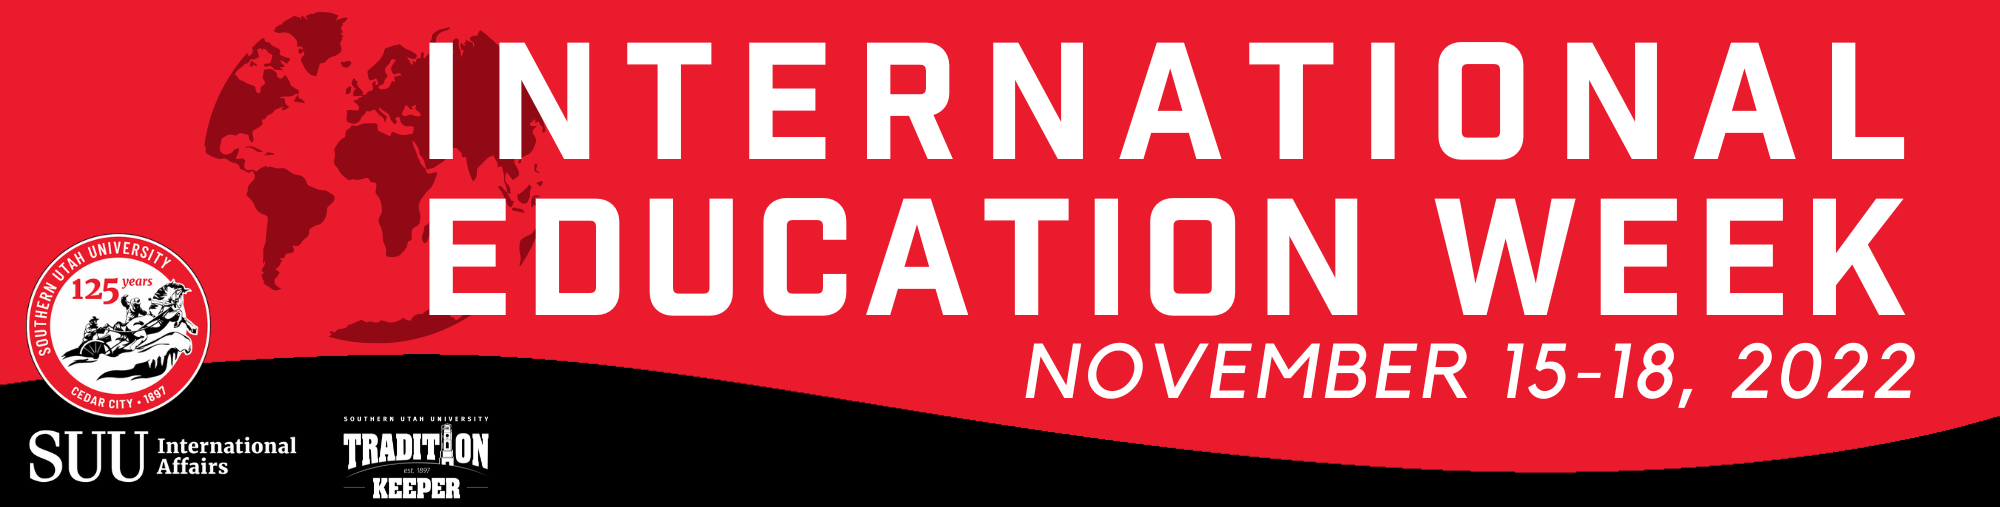 International Education Week 2021